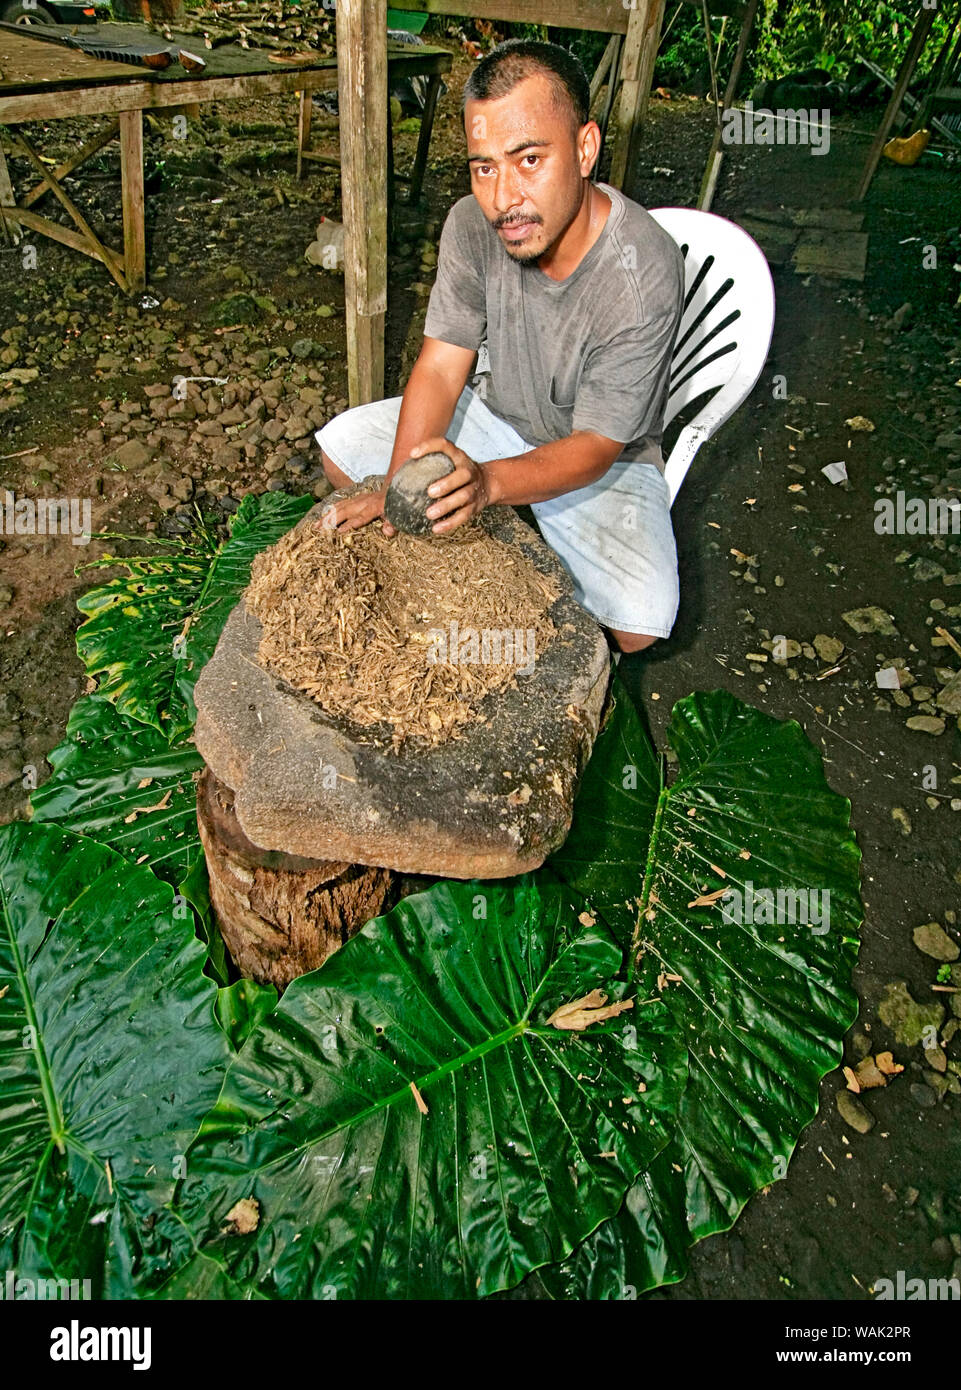 Kosrae, Mikronesien (FSM). Man zerstößt sakau (Kava), root verwendet eine milde berauschenden und Getränk zu machen. (Redaktionelle nur verwenden) Stockfoto